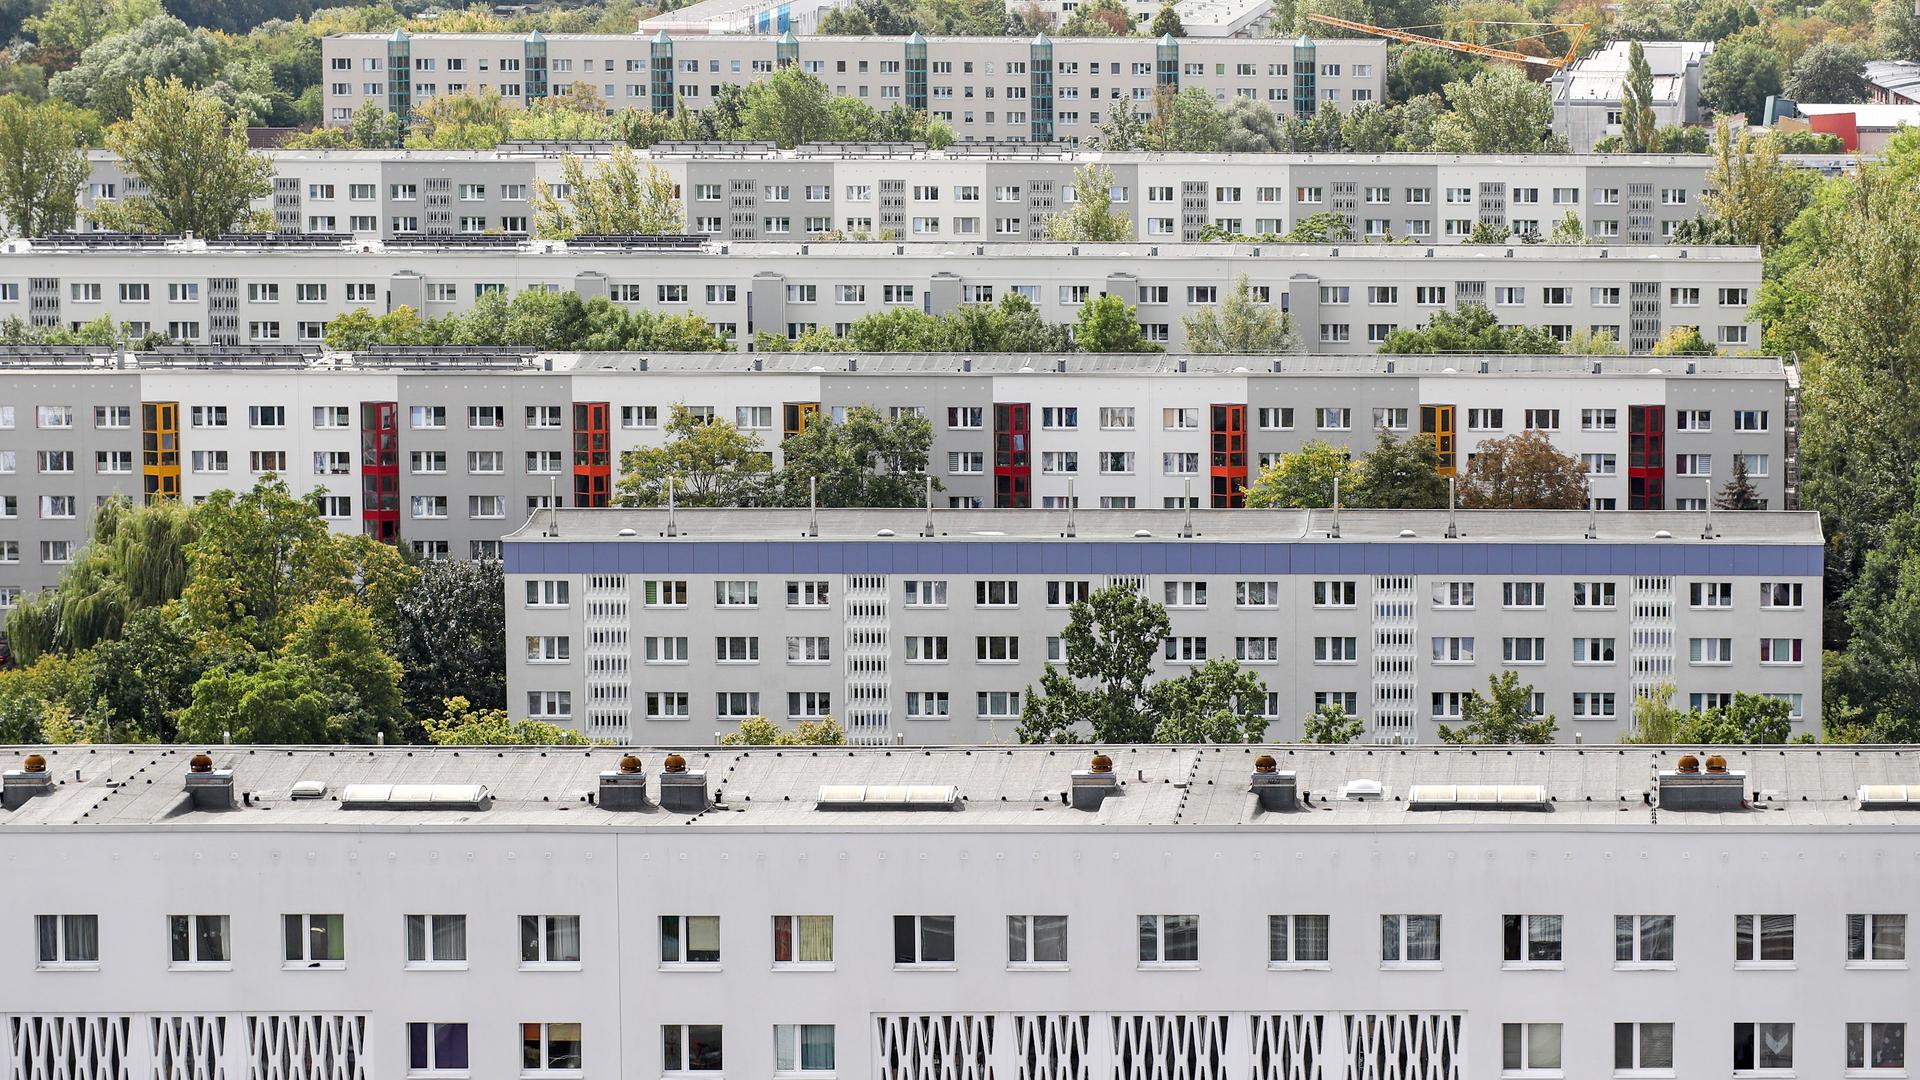 Blick über das DDR-Wohngebiet Halle-Neustadt, aufgenommen im Jahr 2017